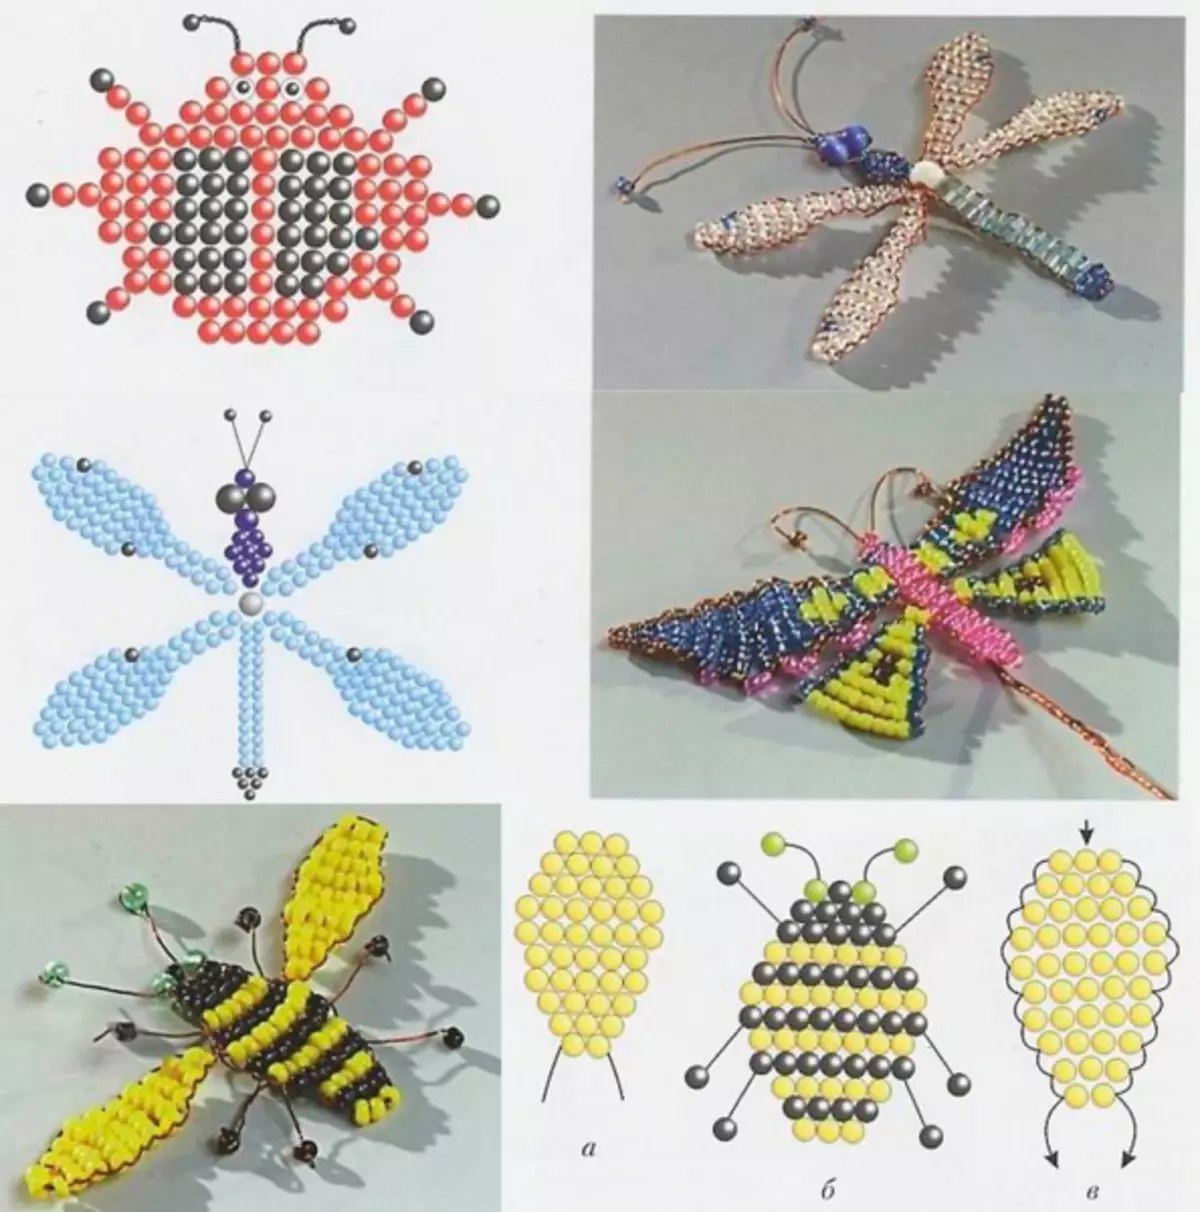 Beads vabzdžiai sagės pavidalu: magistro klasė su schemomis ir nuotraukomis